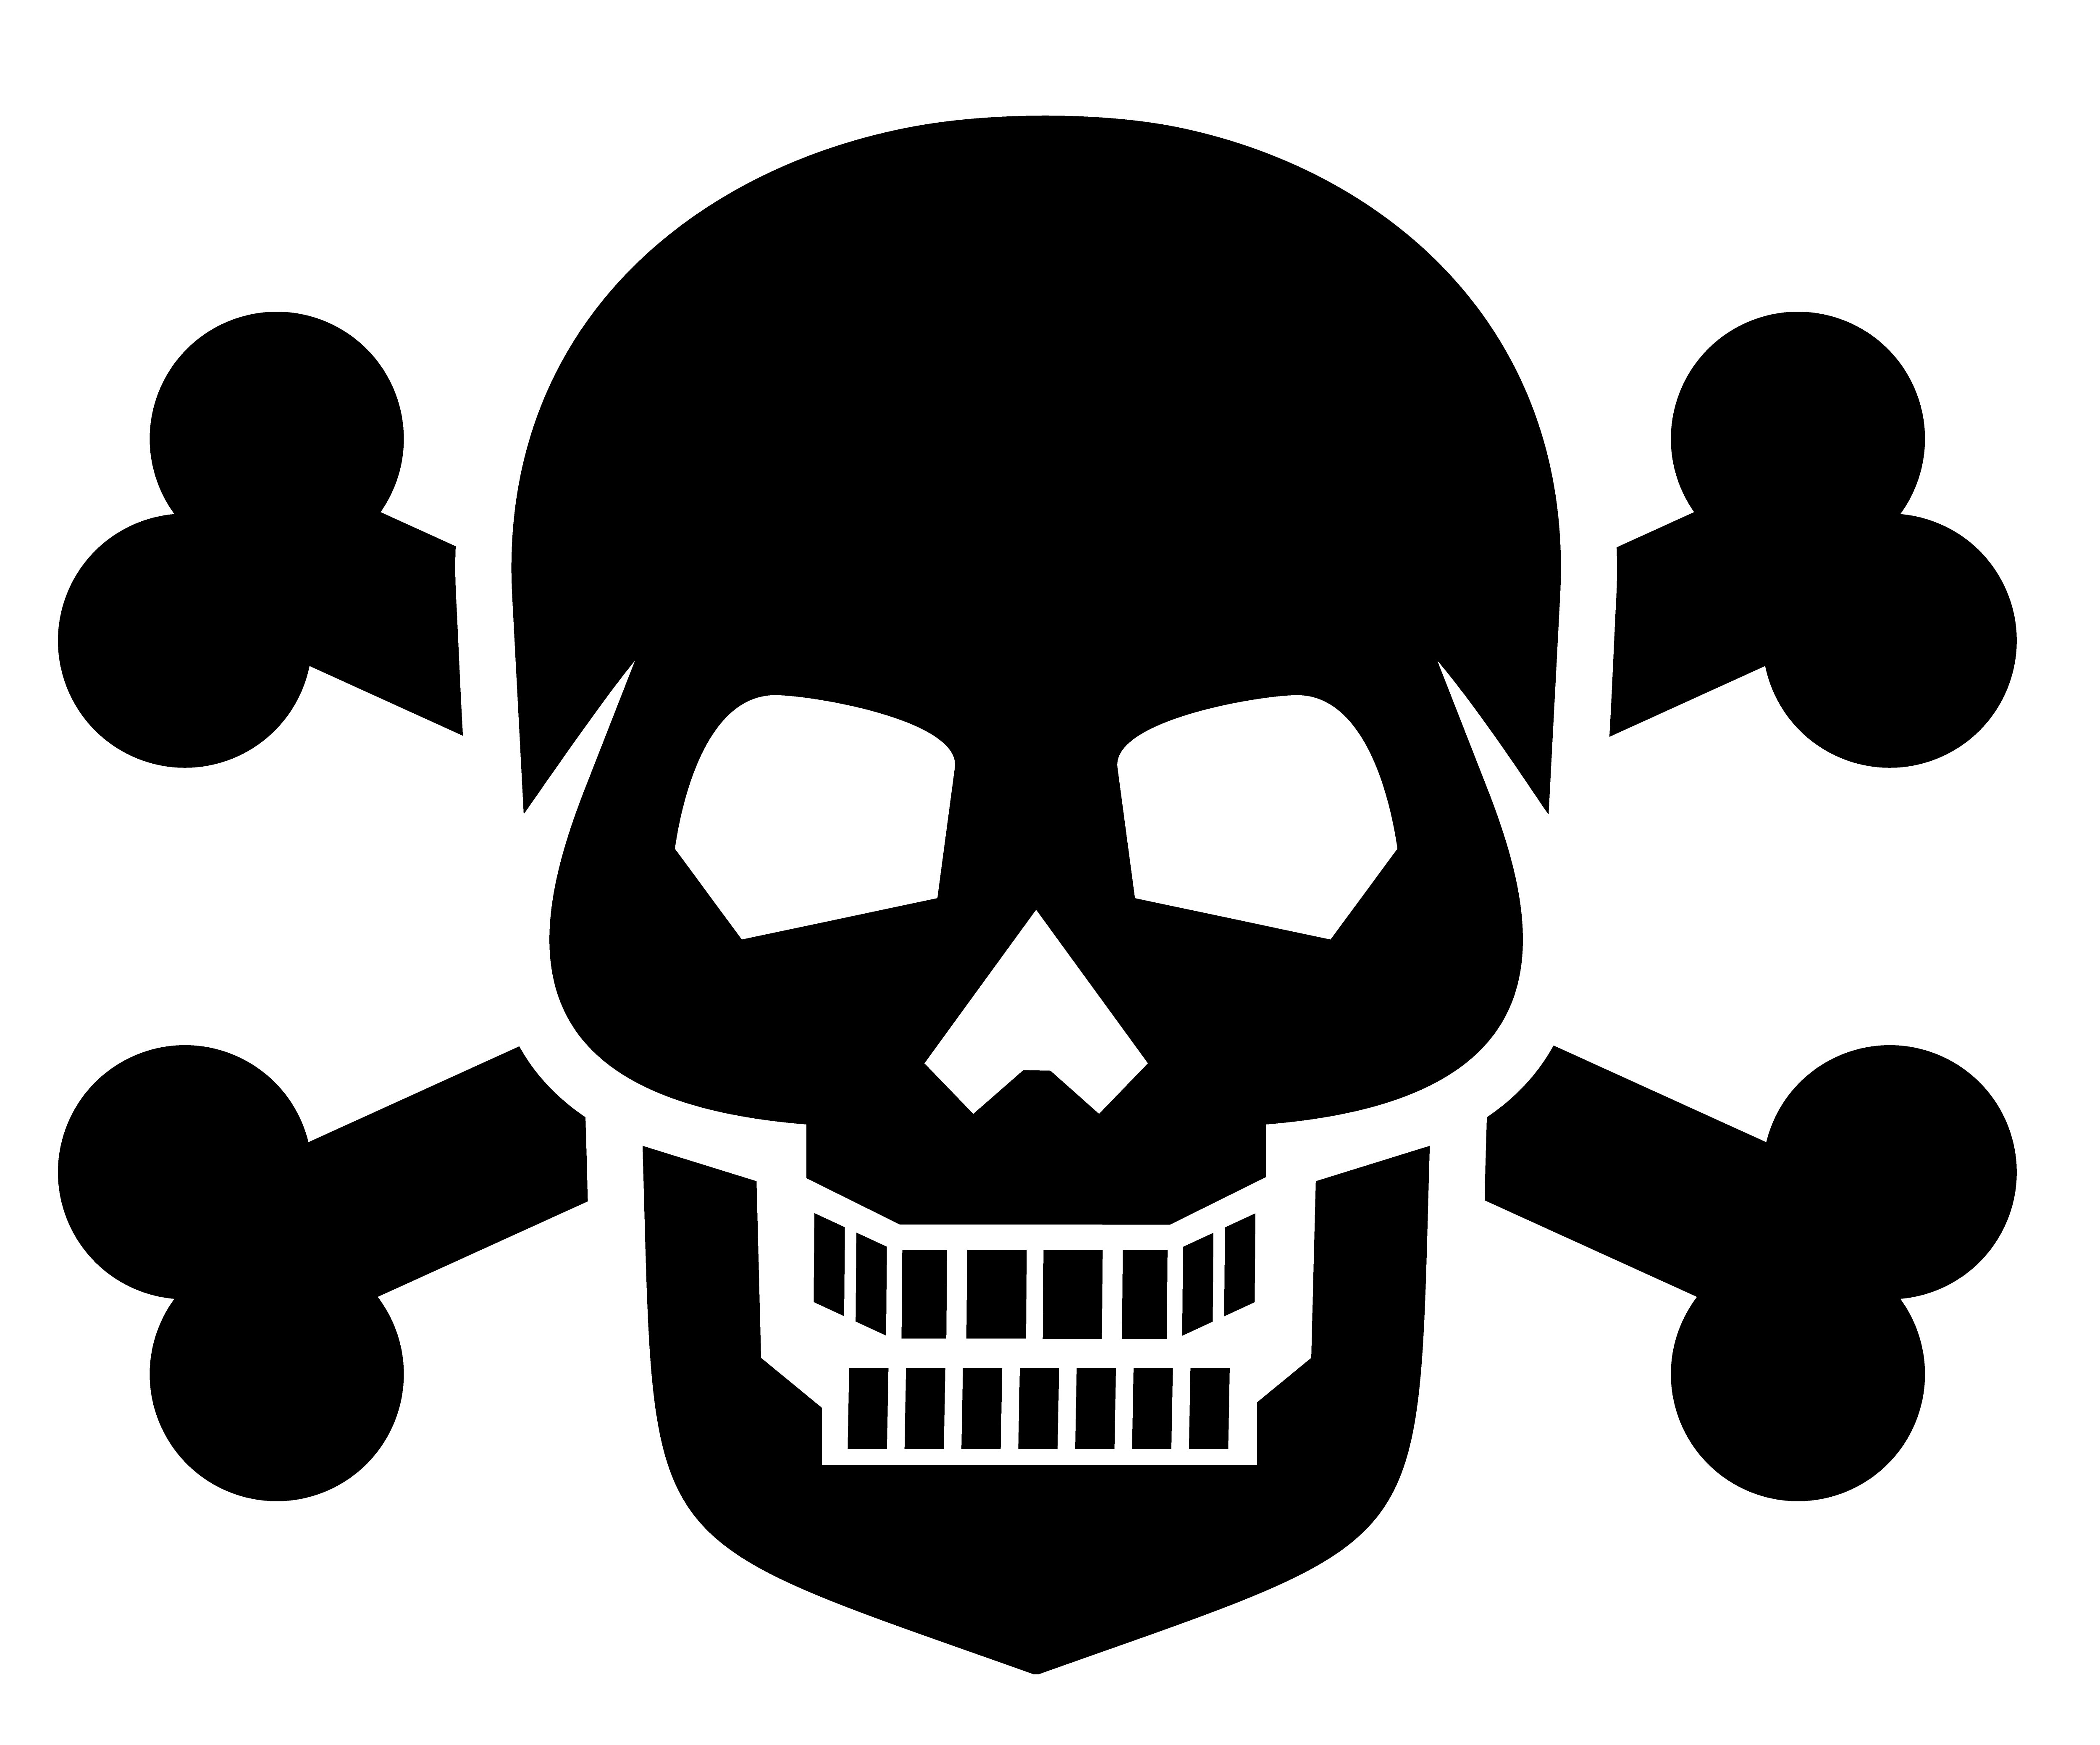 Download emblem with skull - Download Free Vectors, Clipart ...